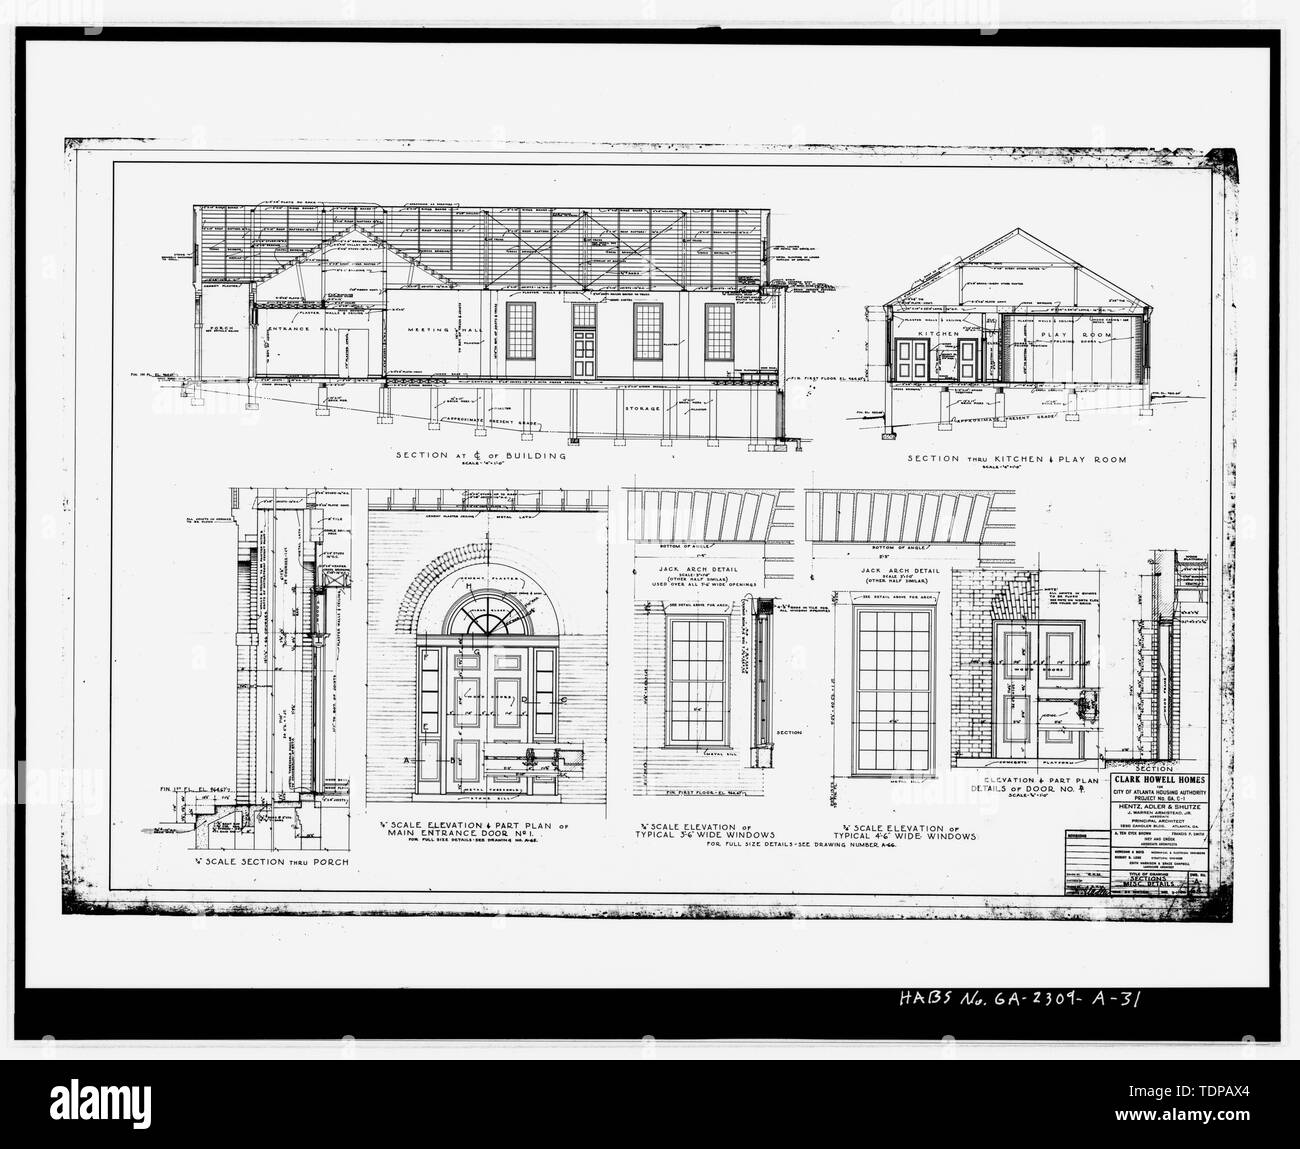 Fotocopia del disegno (1 marzo 1940 disegno architettonico da Heintz, Adler e Schutze, in possesso di Atlanta Autorità di alloggiamento). Sezioni, di vari dettagli. Il disegno n. A-64 - Clark Howell case, comunità centro, 528 Lovejoy Street, Atlanta, Fulton County, GA Foto Stock